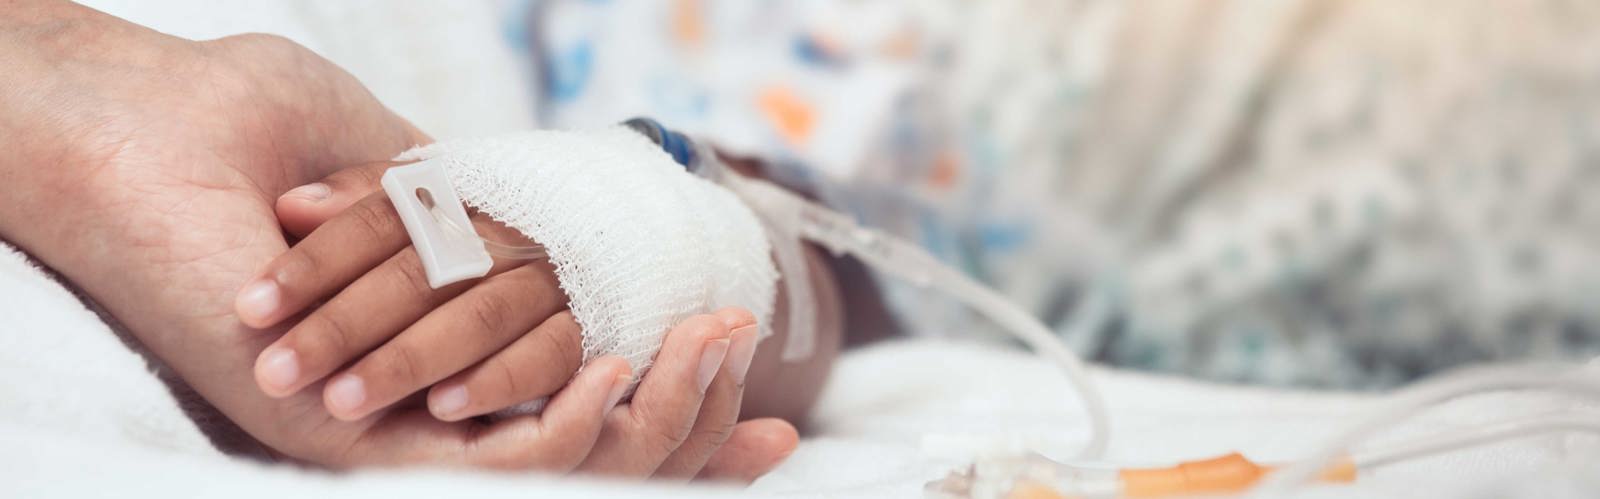 Vuxenhand håller barnhand med dropp på sjukhus